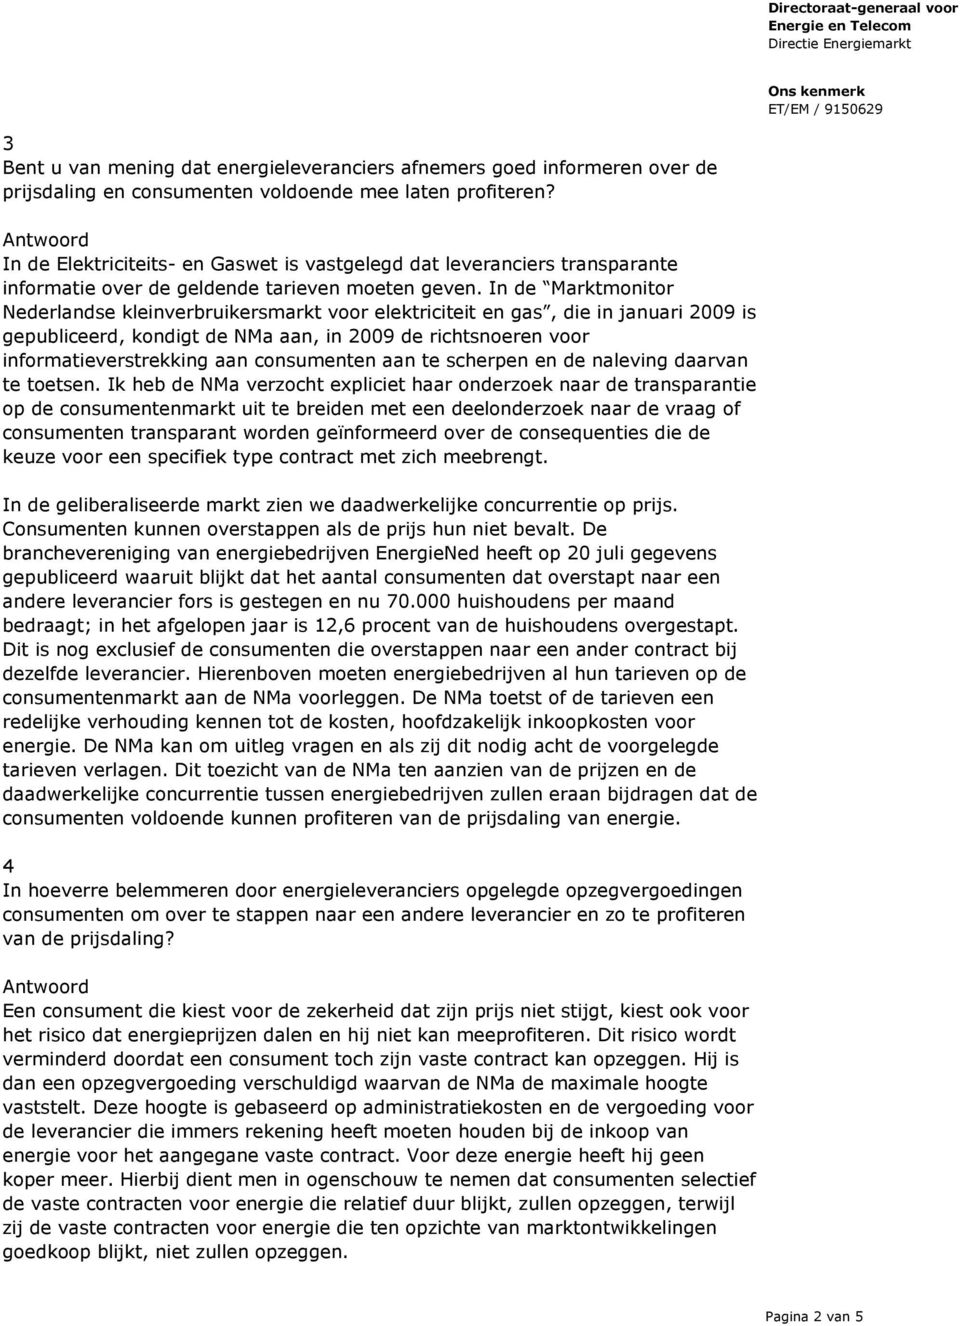 In de Marktmonitor Nederlandse kleinverbruikersmarkt voor elektriciteit en gas, die in januari 2009 is gepubliceerd, kondigt de NMa aan, in 2009 de richtsnoeren voor informatieverstrekking aan